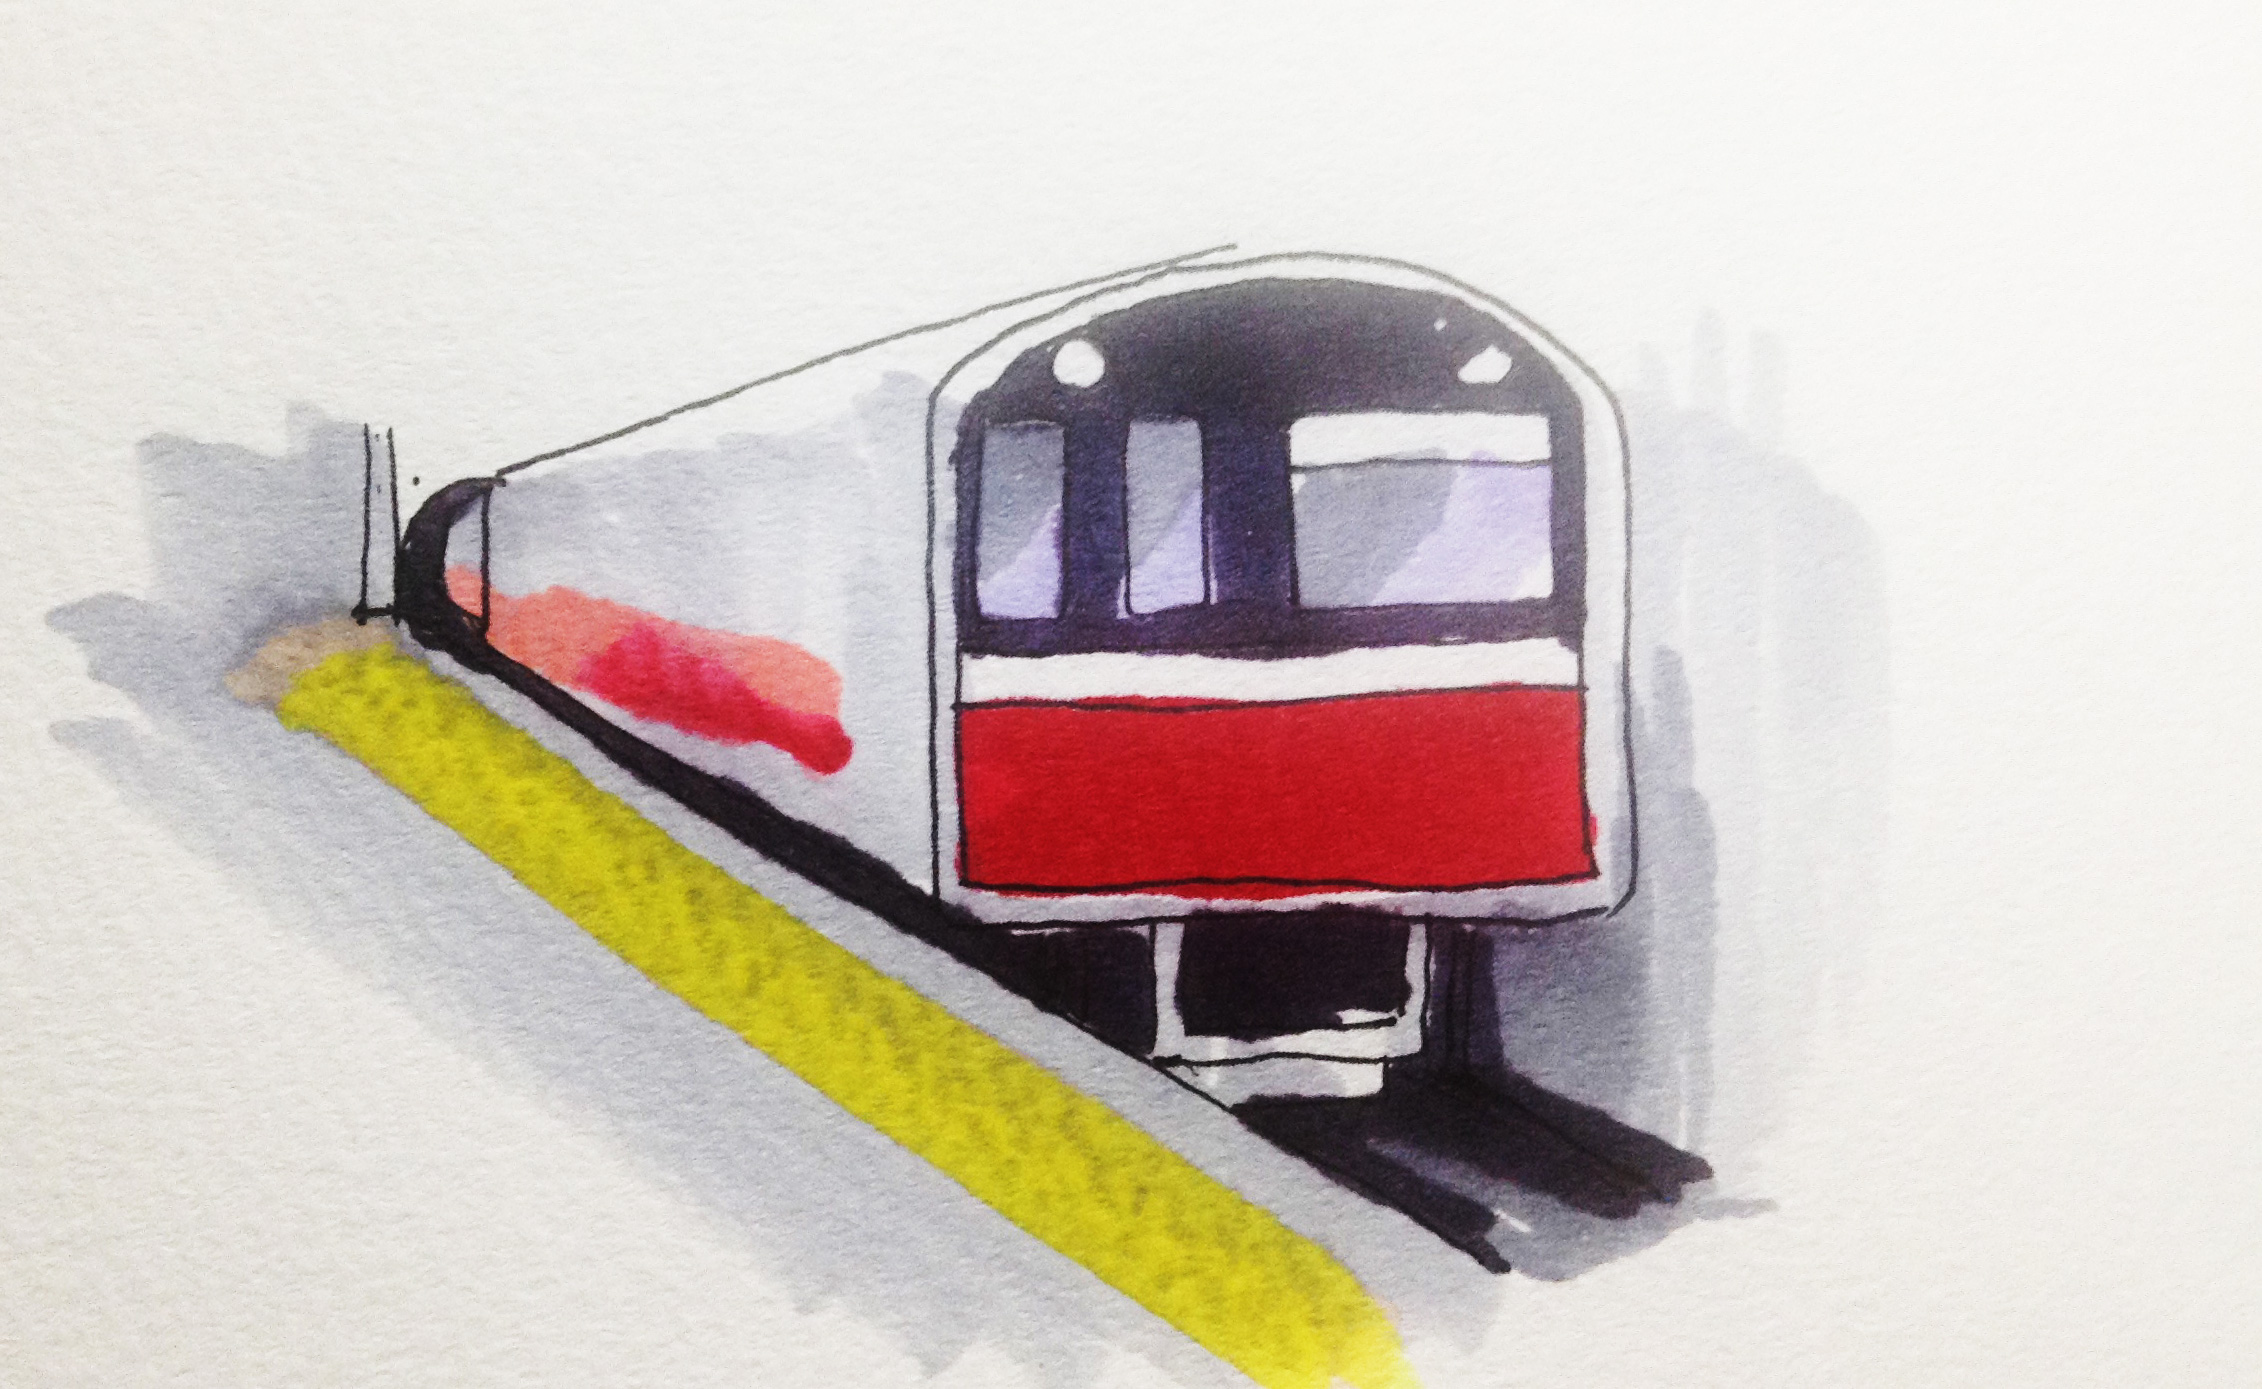 地下鉄のイメージをコピックで描いたイラスト(大阪市営地下鉄 御堂筋線)